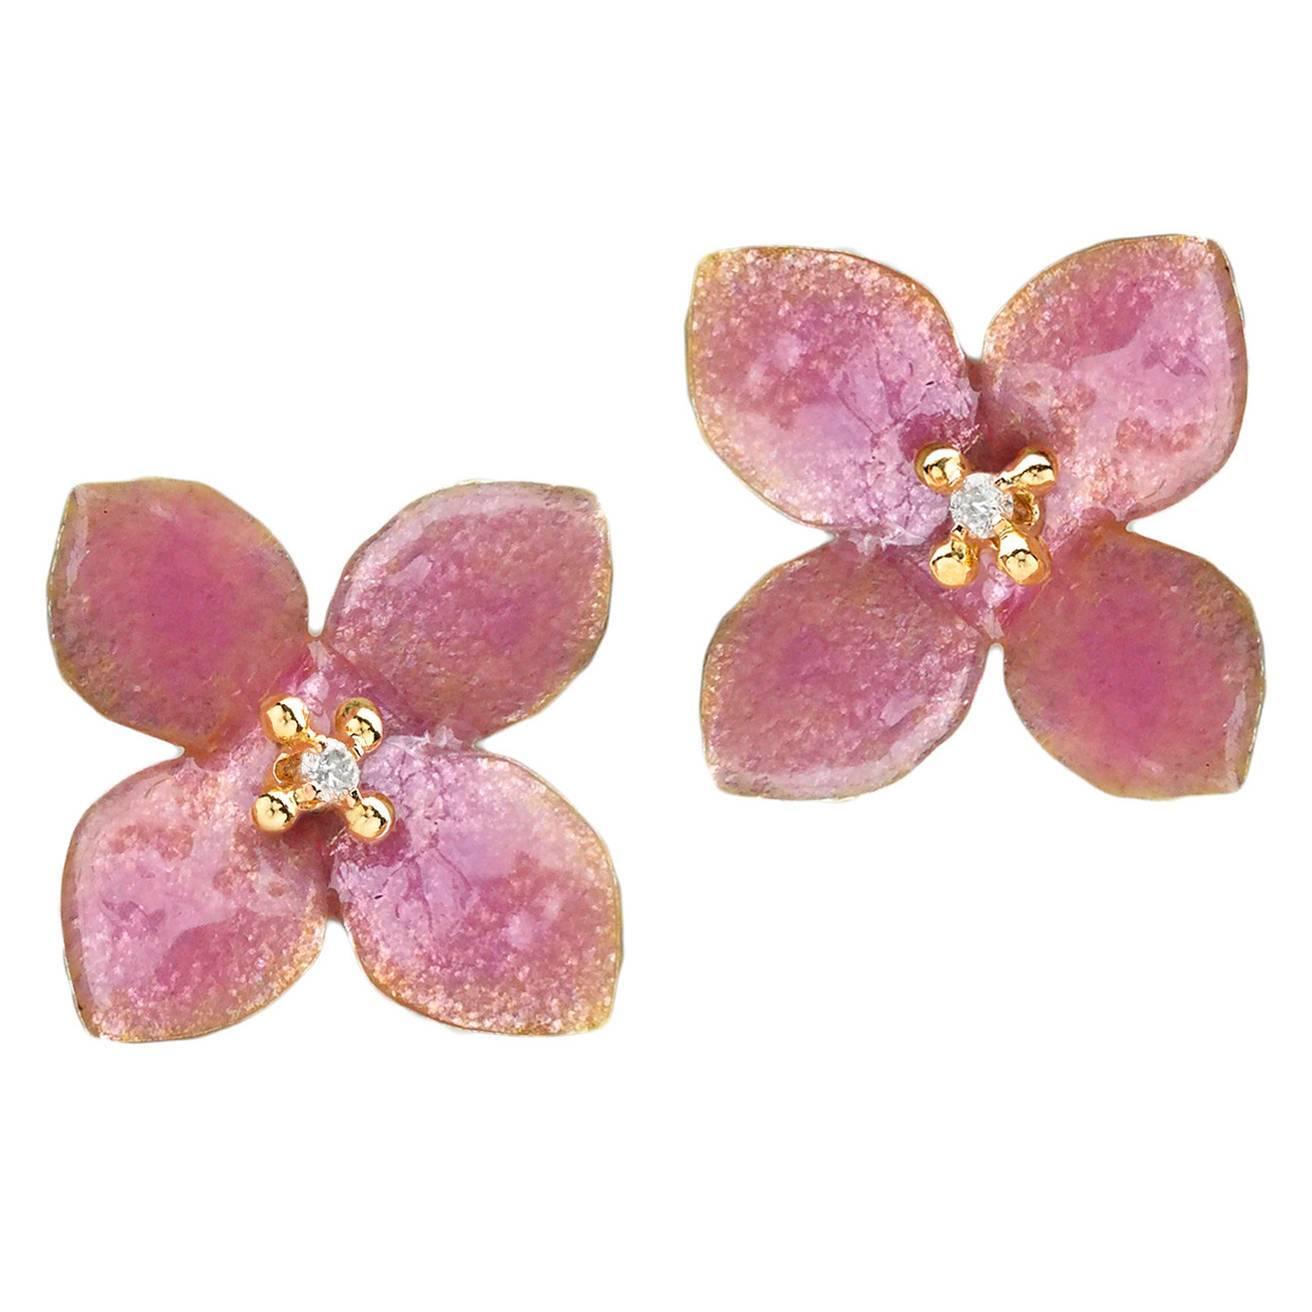 Russell Trusso Handmade Pink Enamel White Diamond Gold Blossom Earrings